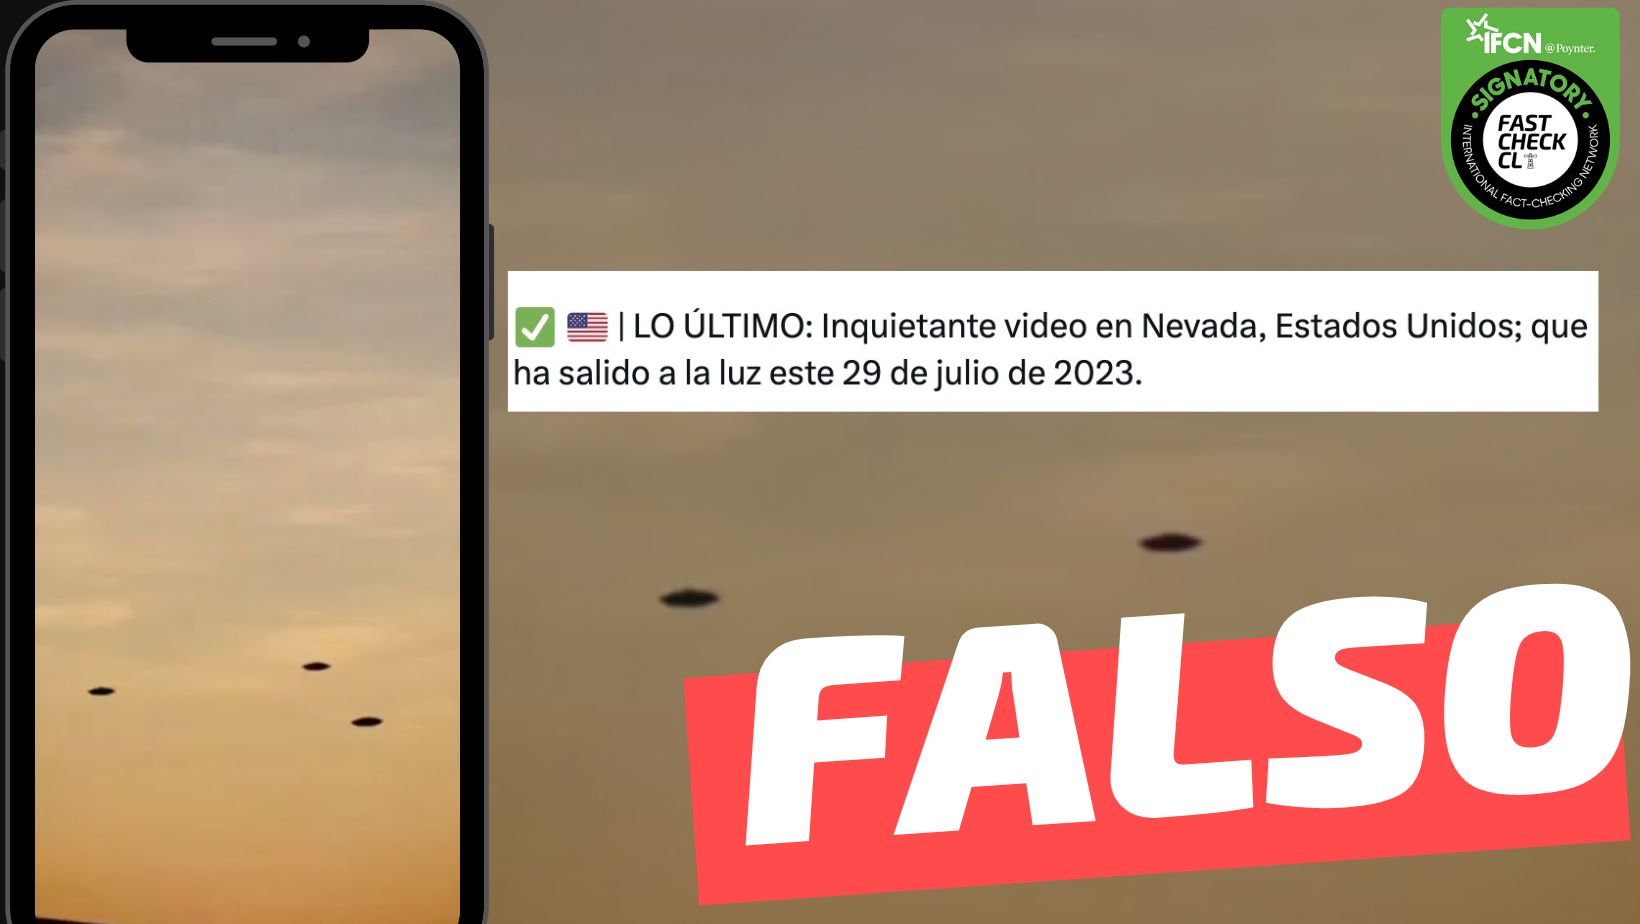 You are currently viewing “Video en Nevada, Estados Unidos; ha salido a la luz este 29 de julio de 2023, donde se observan tres naves no identificadas”: #Falso